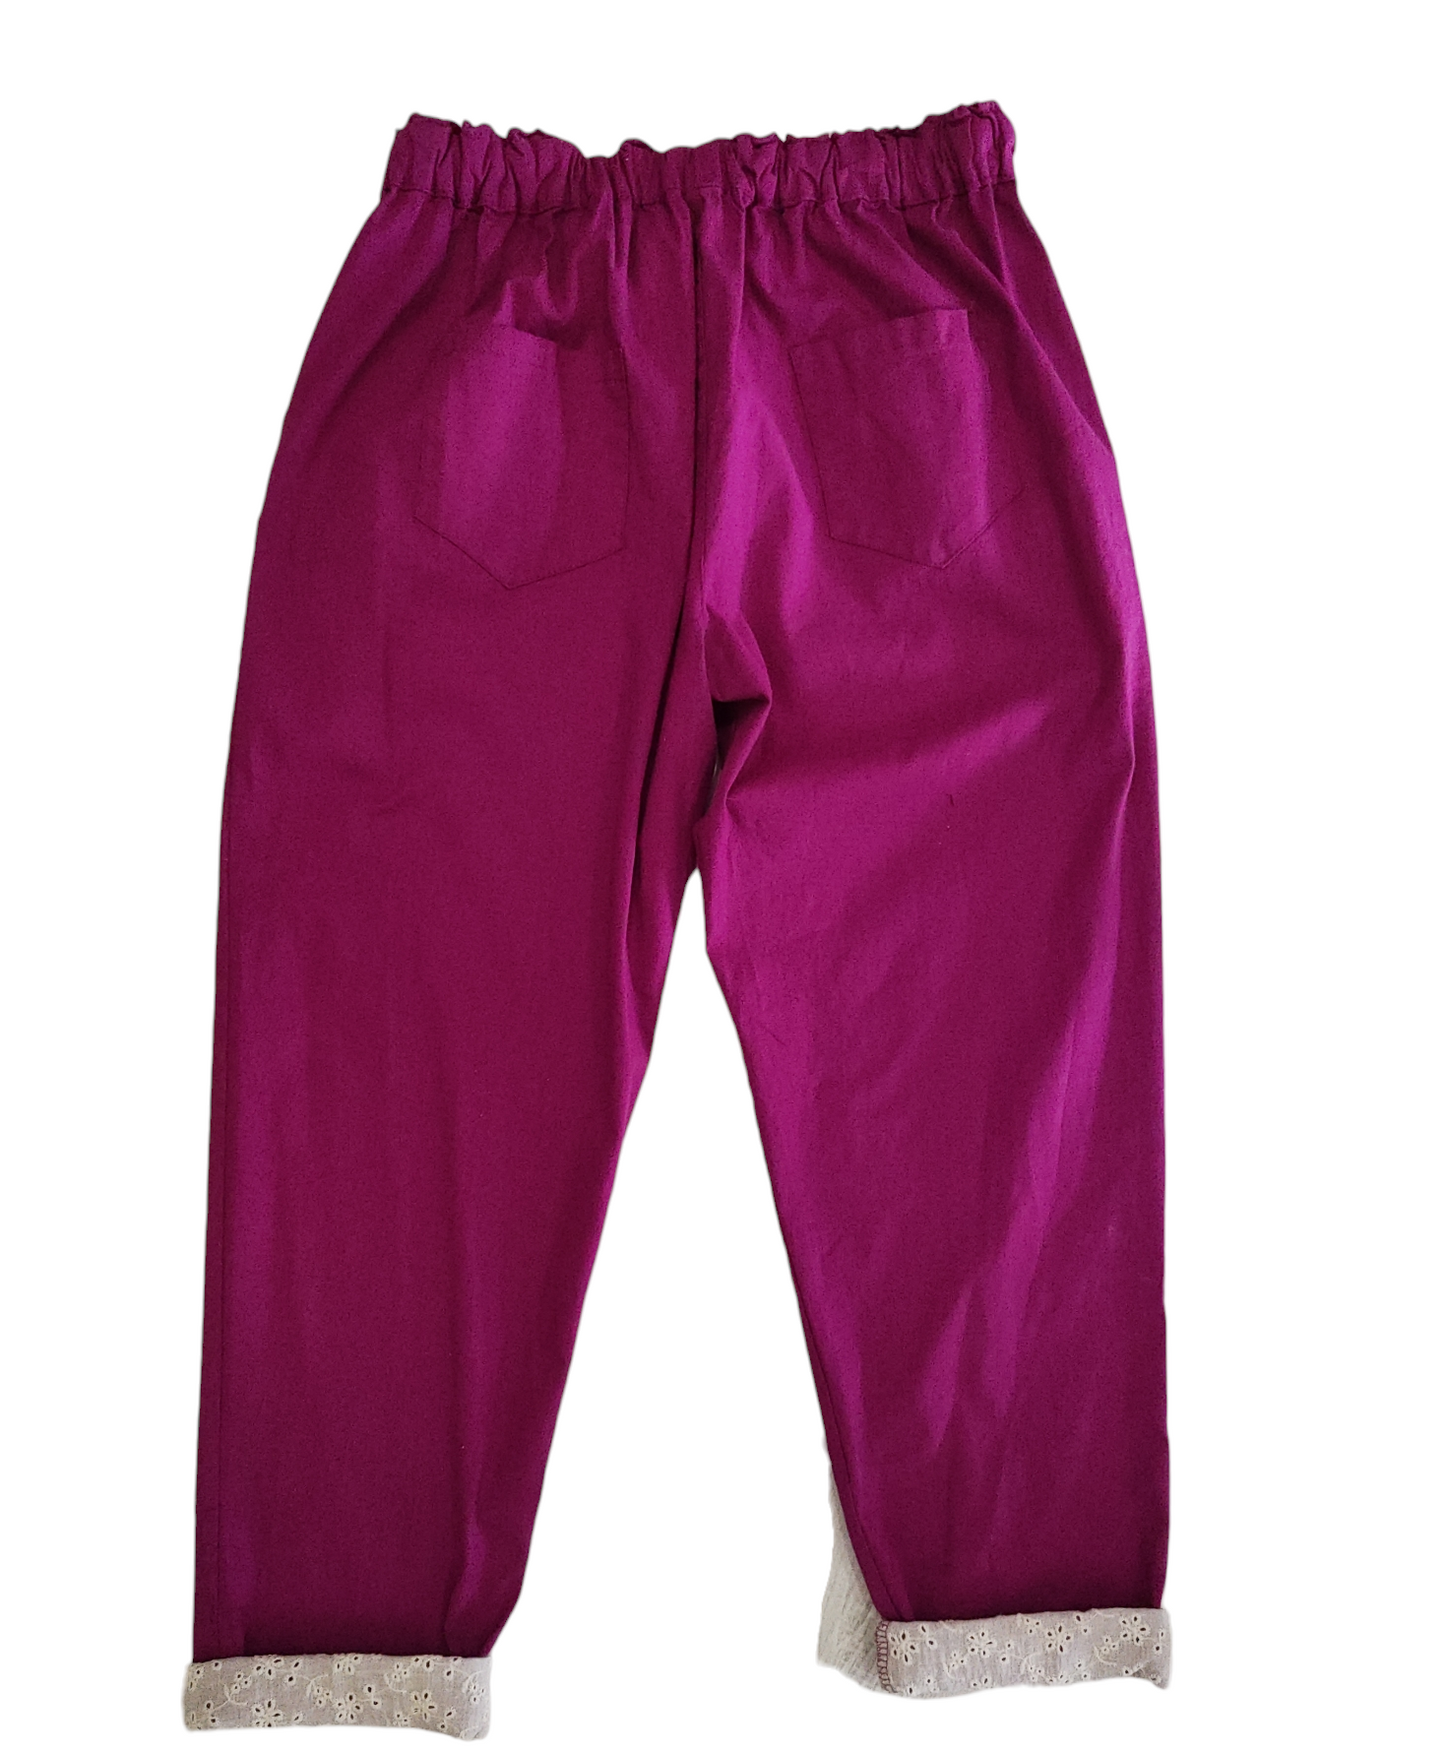 Pantalone Donna Tinta Unita con Risvolto rifinito in San Gallo